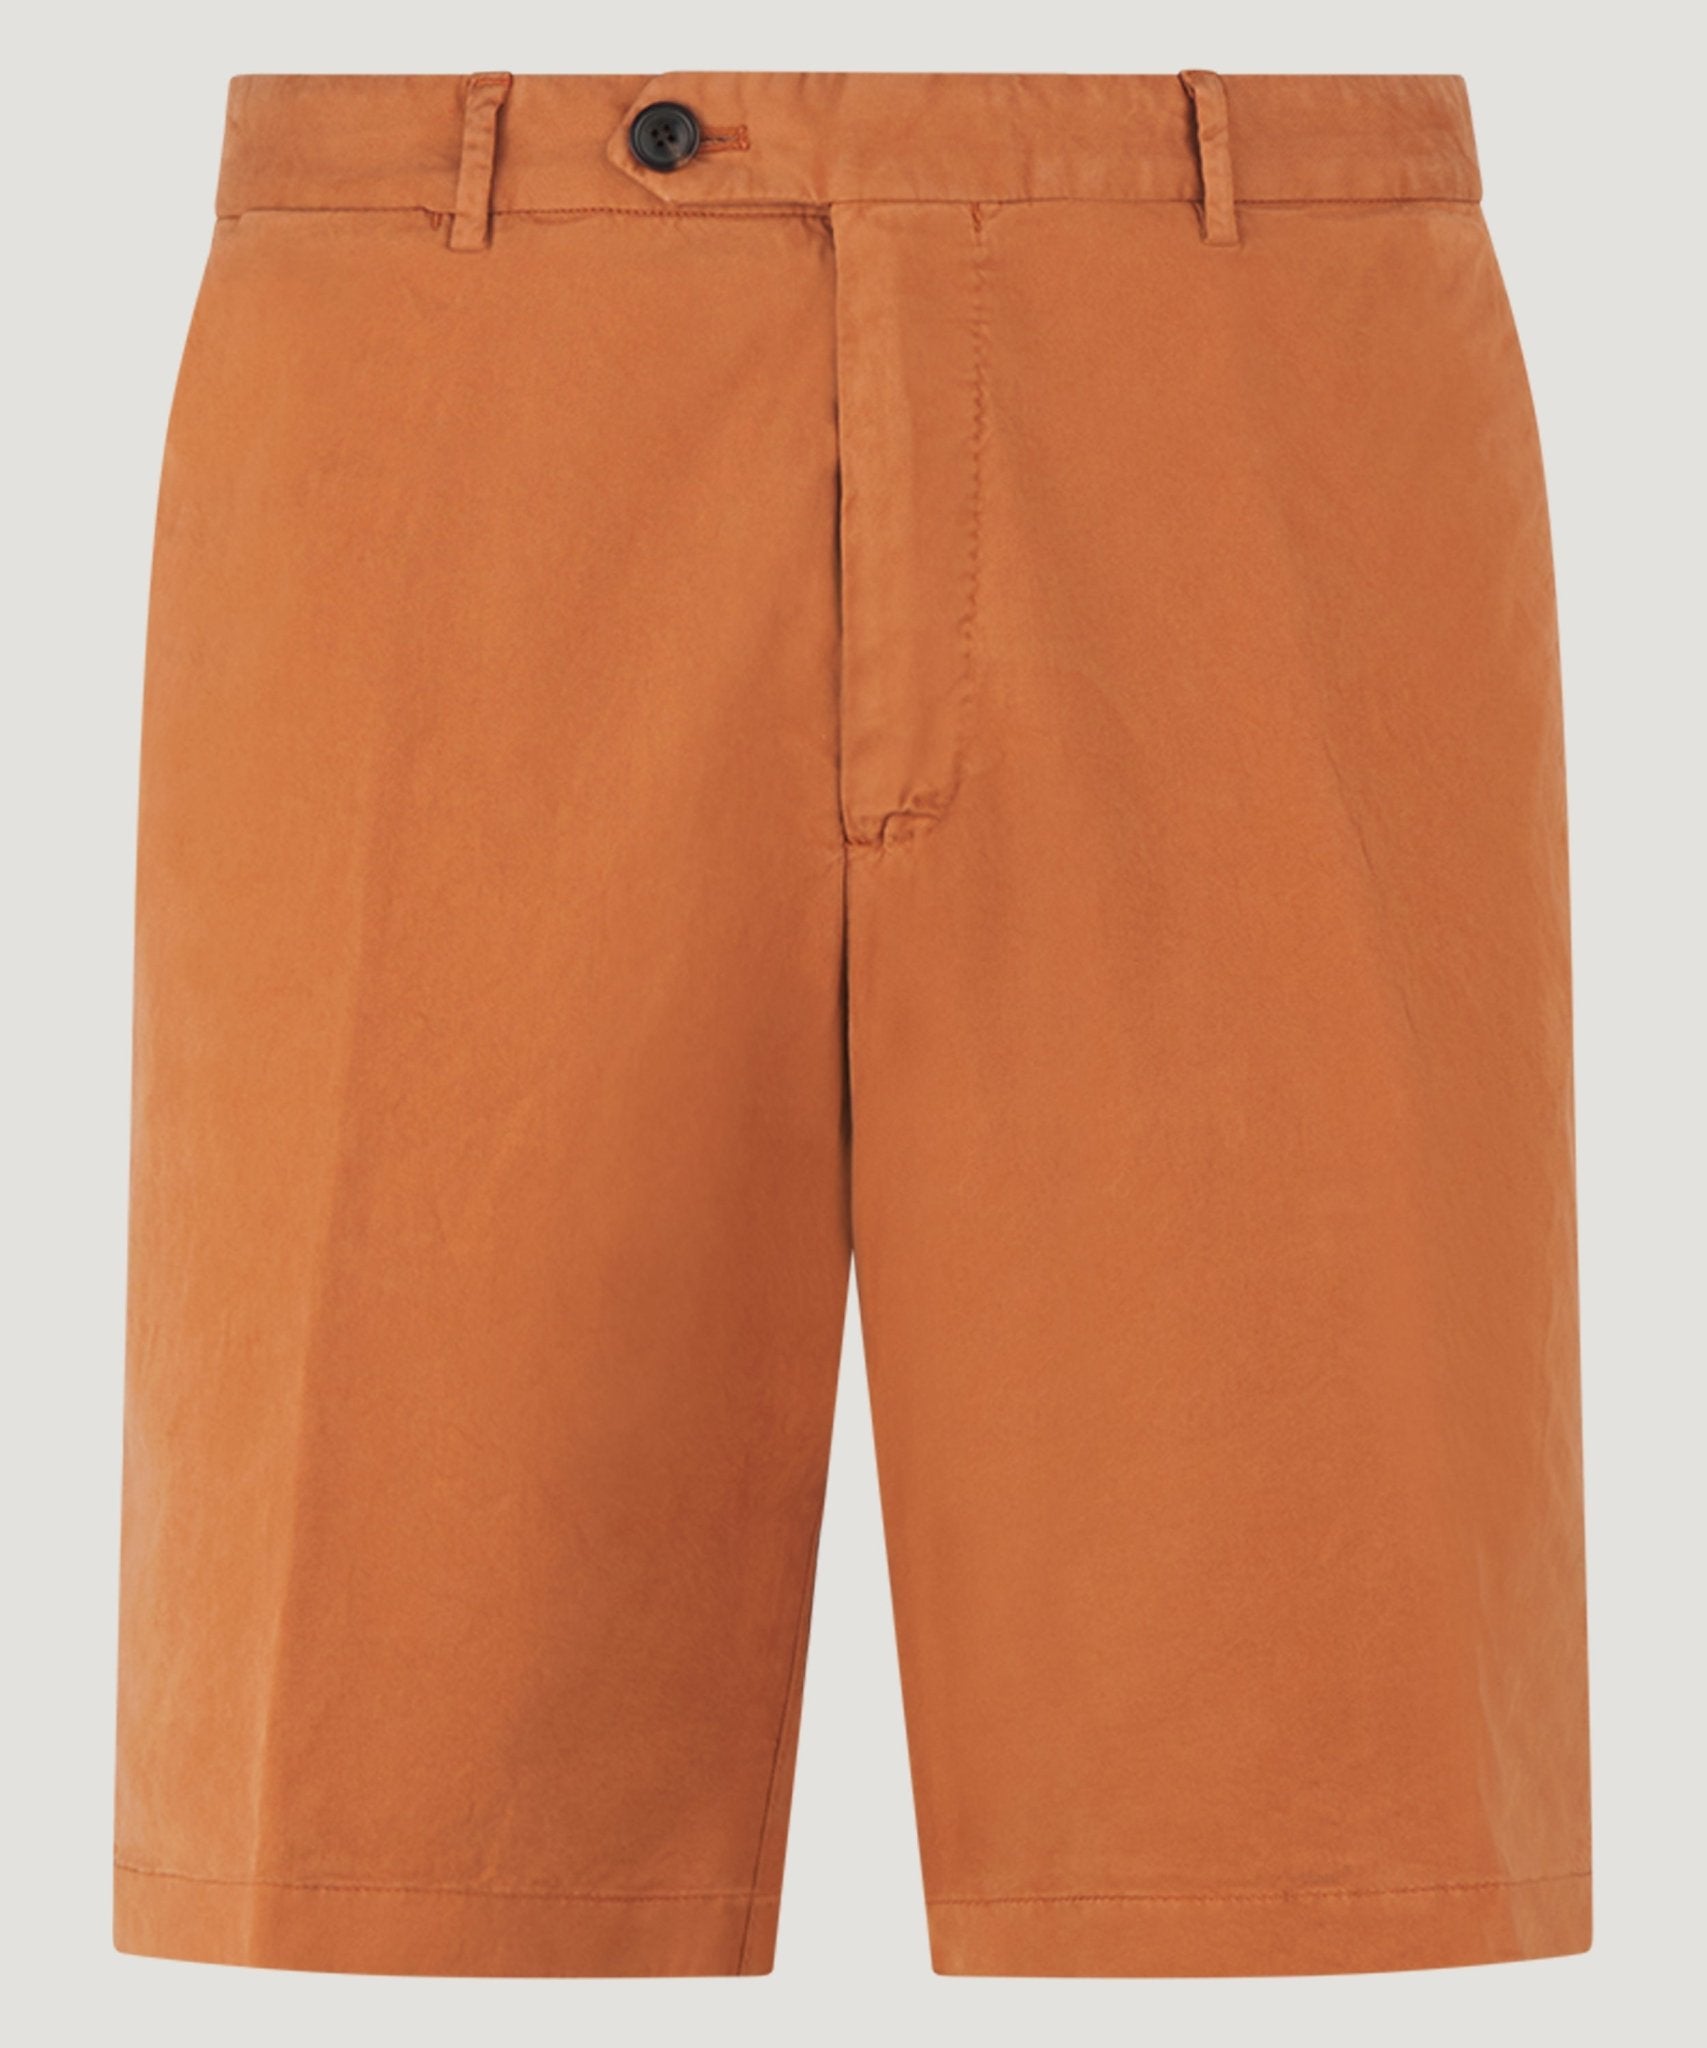 SOCI3TY Shorts katoen stretch oranje - The Society Shop